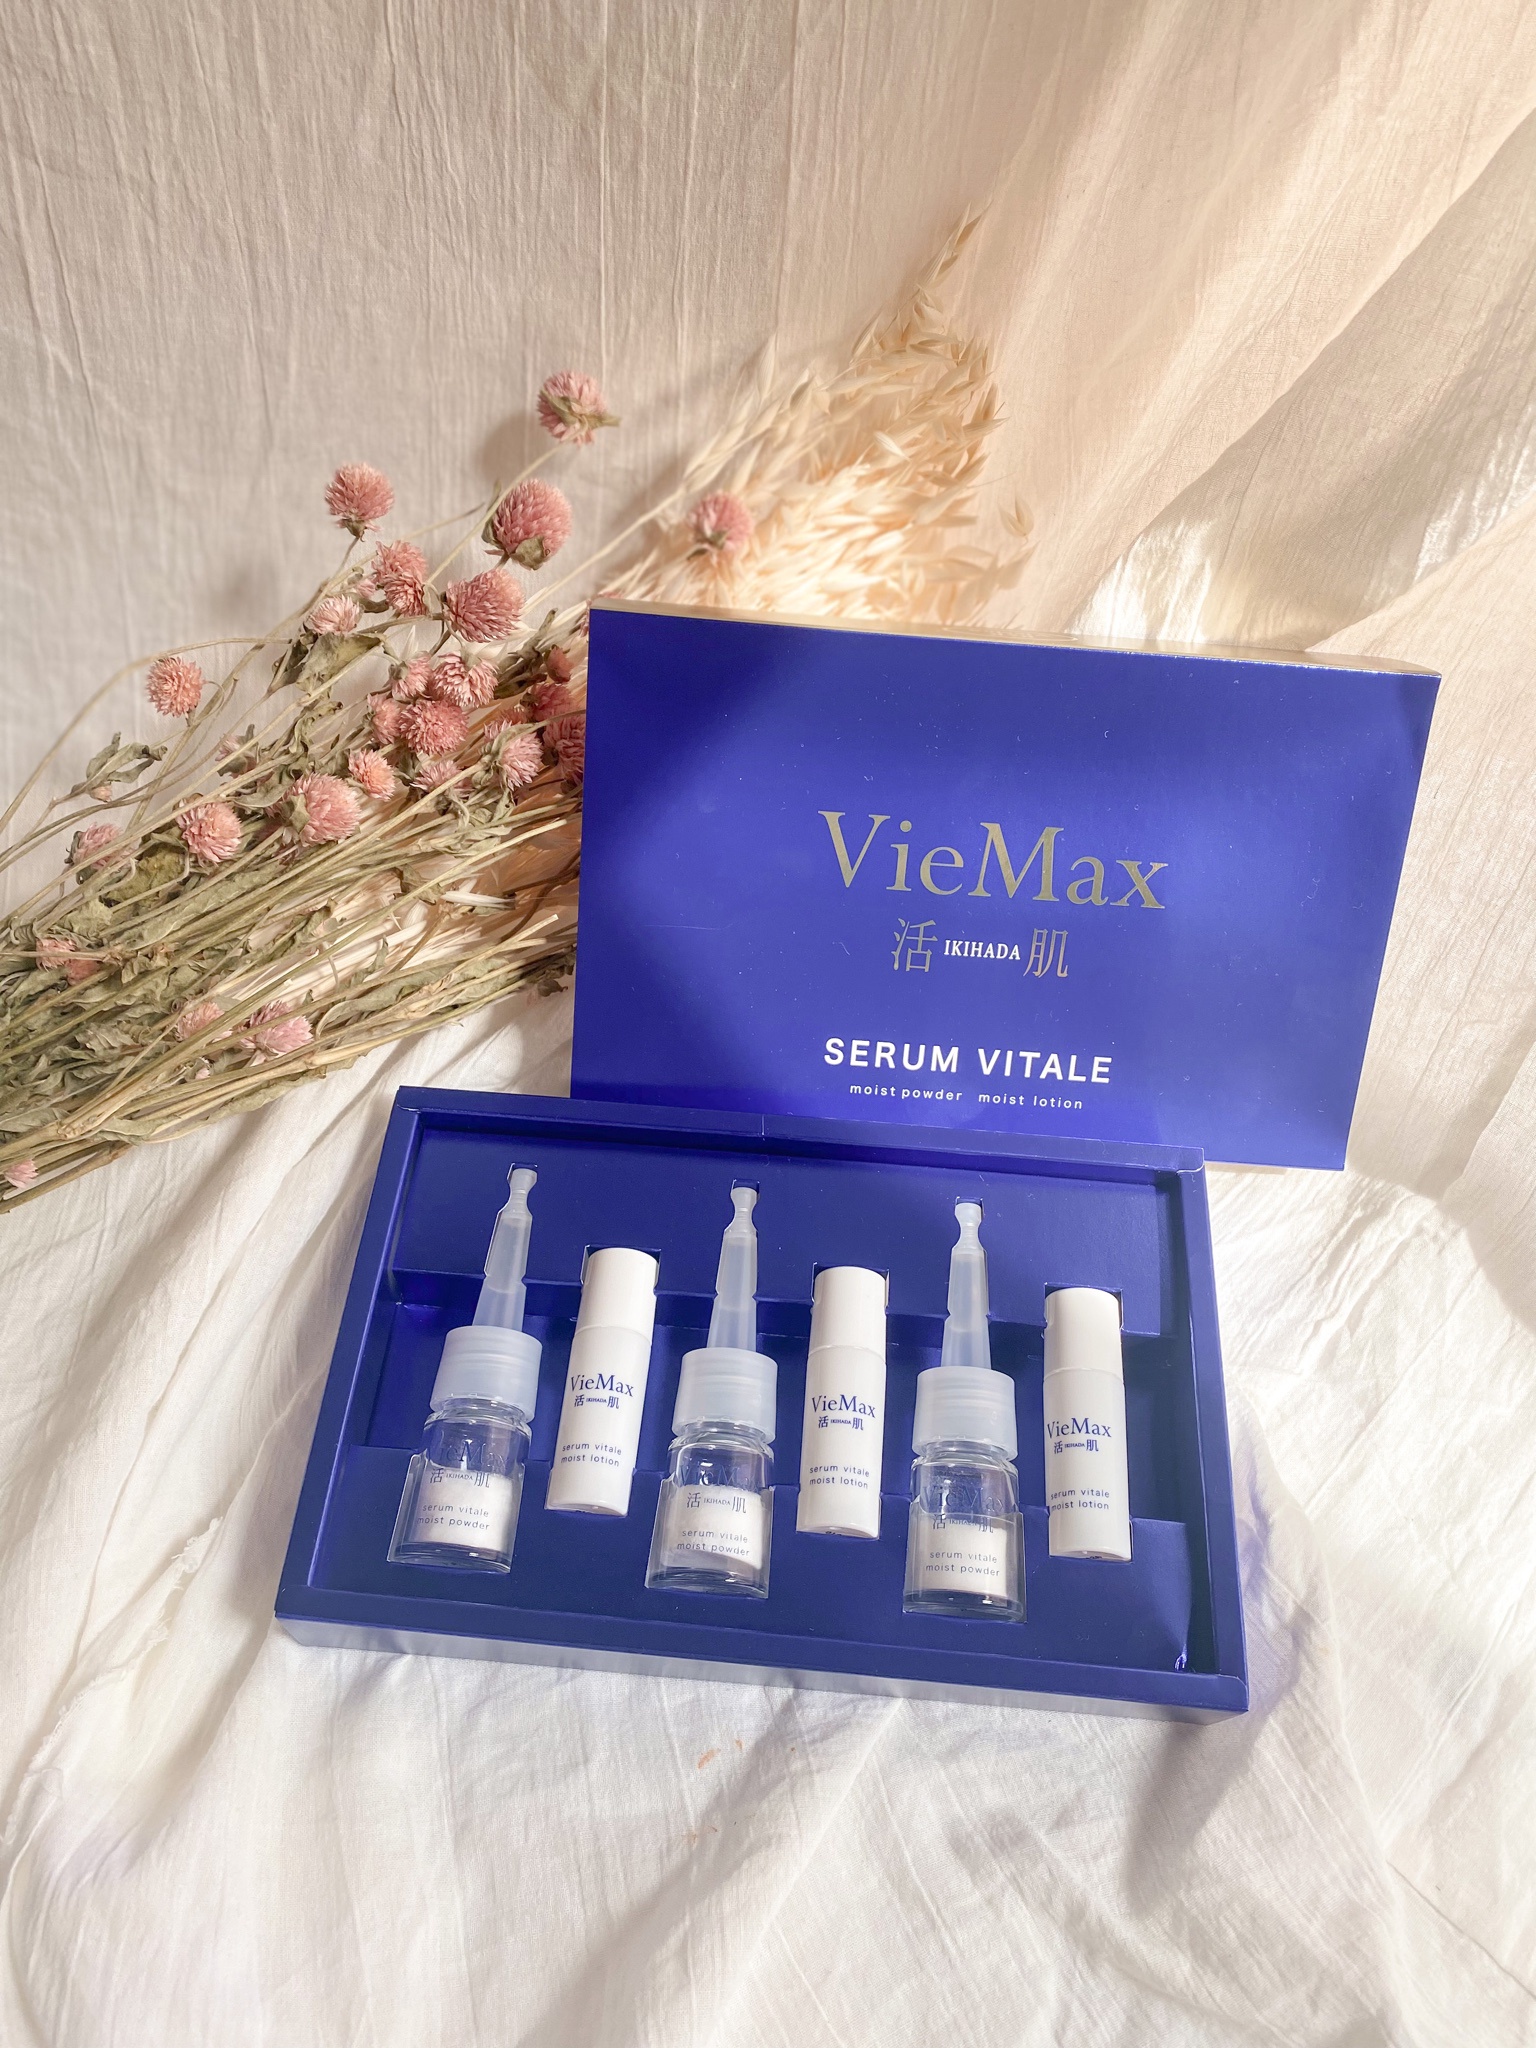 VieMax 活肌 / セラムヴィターレ(生コラーゲン美容液)の公式商品情報